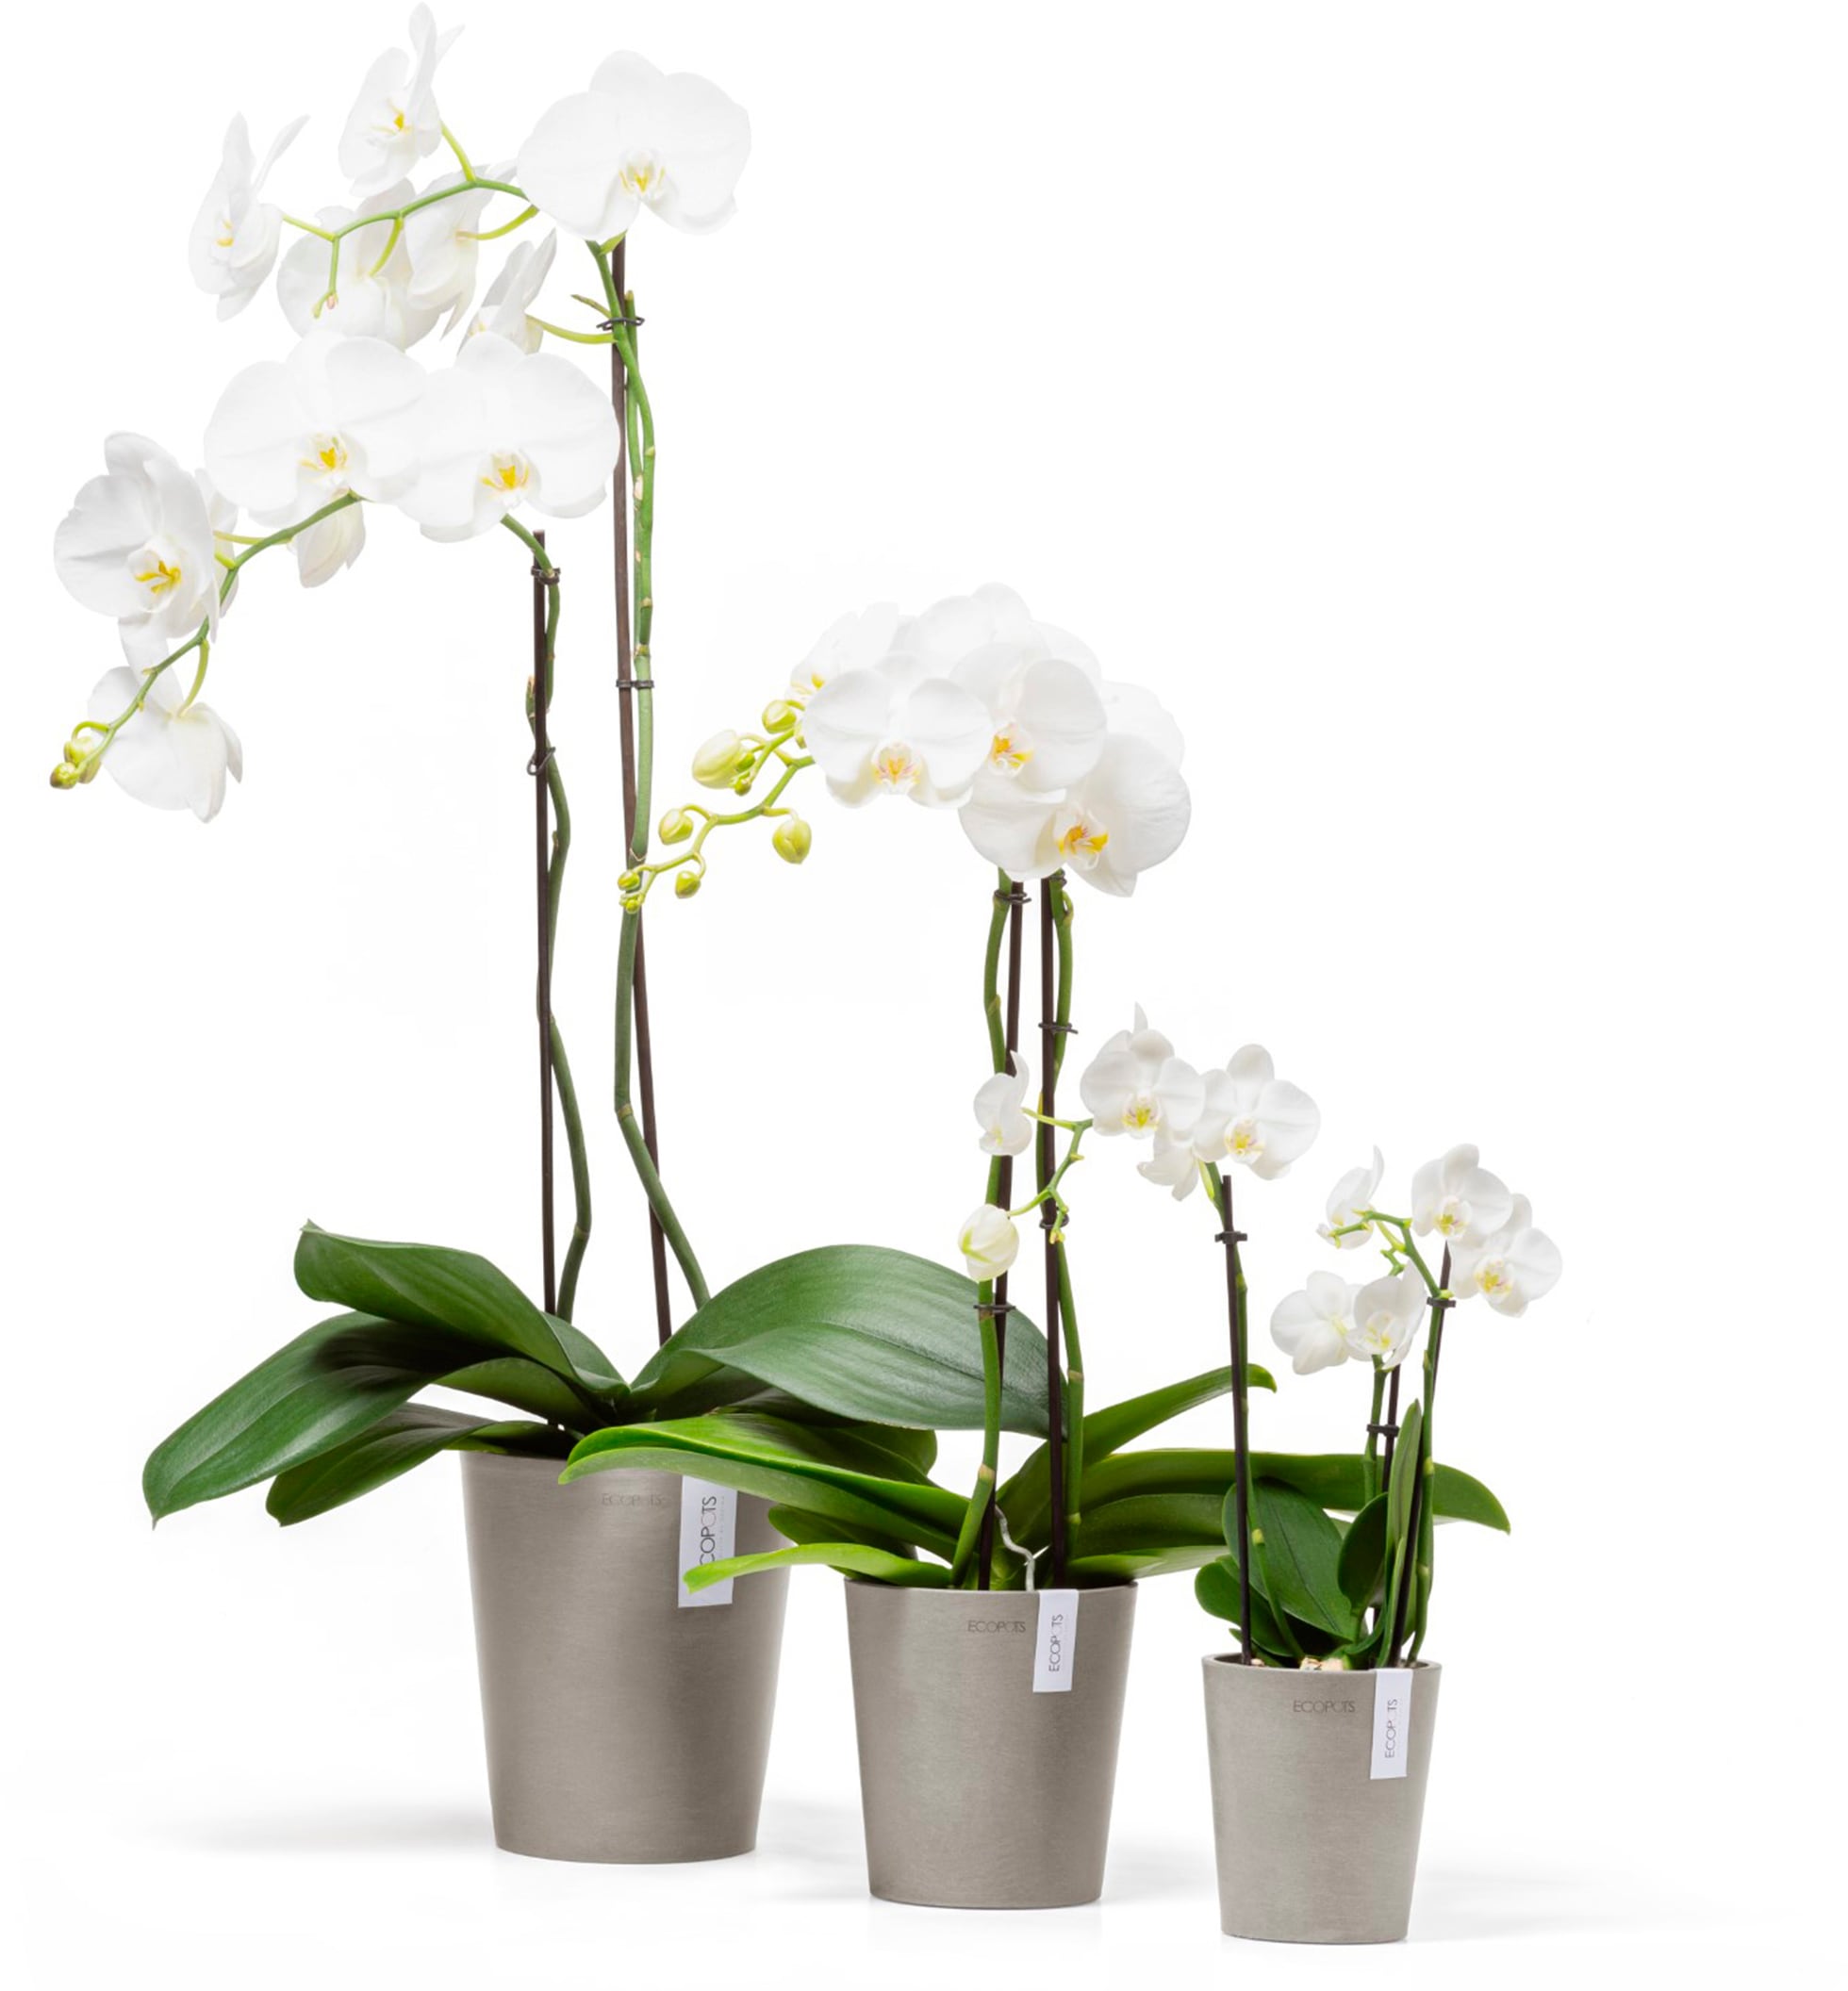 ECOPOTS Blumentopf »Morinda Orchidee 11 Taupe«, für den Innenbereich